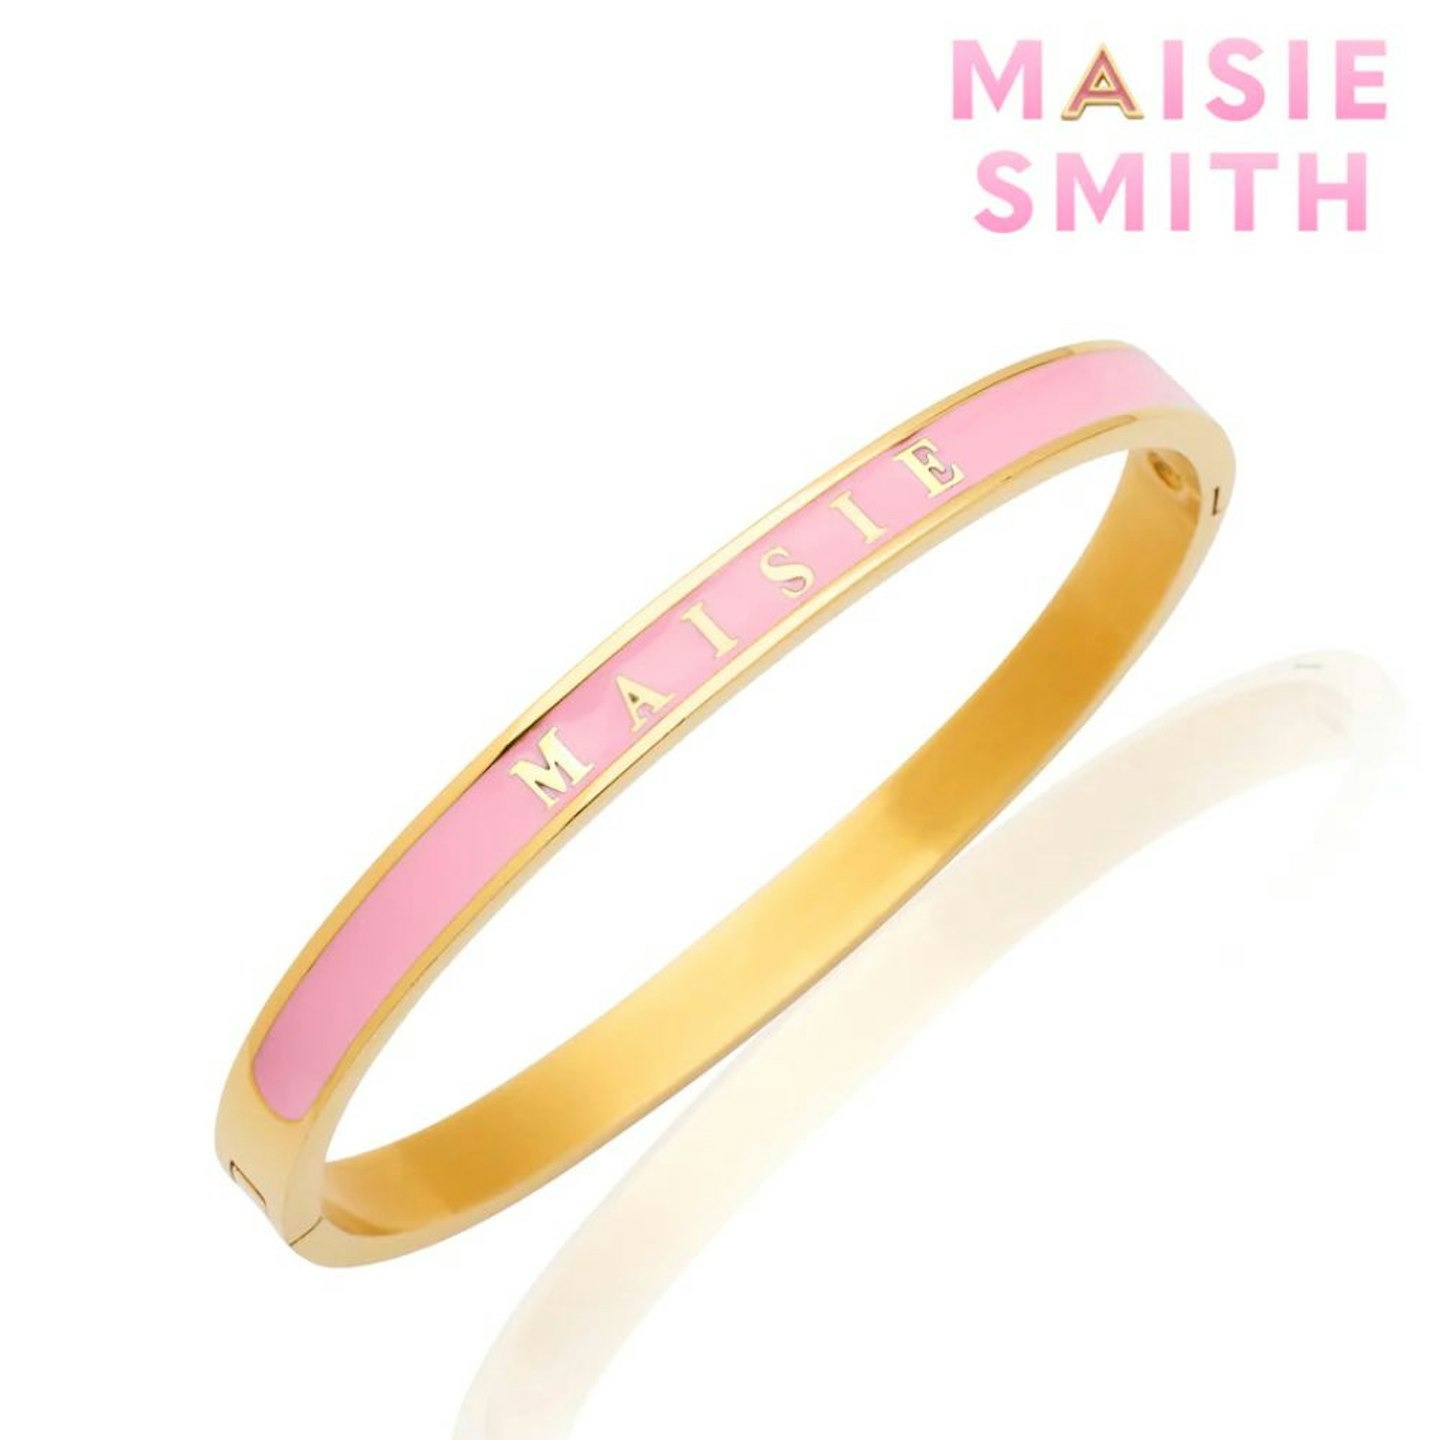 Abbott Lyon X Maisie Smith Custom Name Colour Enamel Bangle